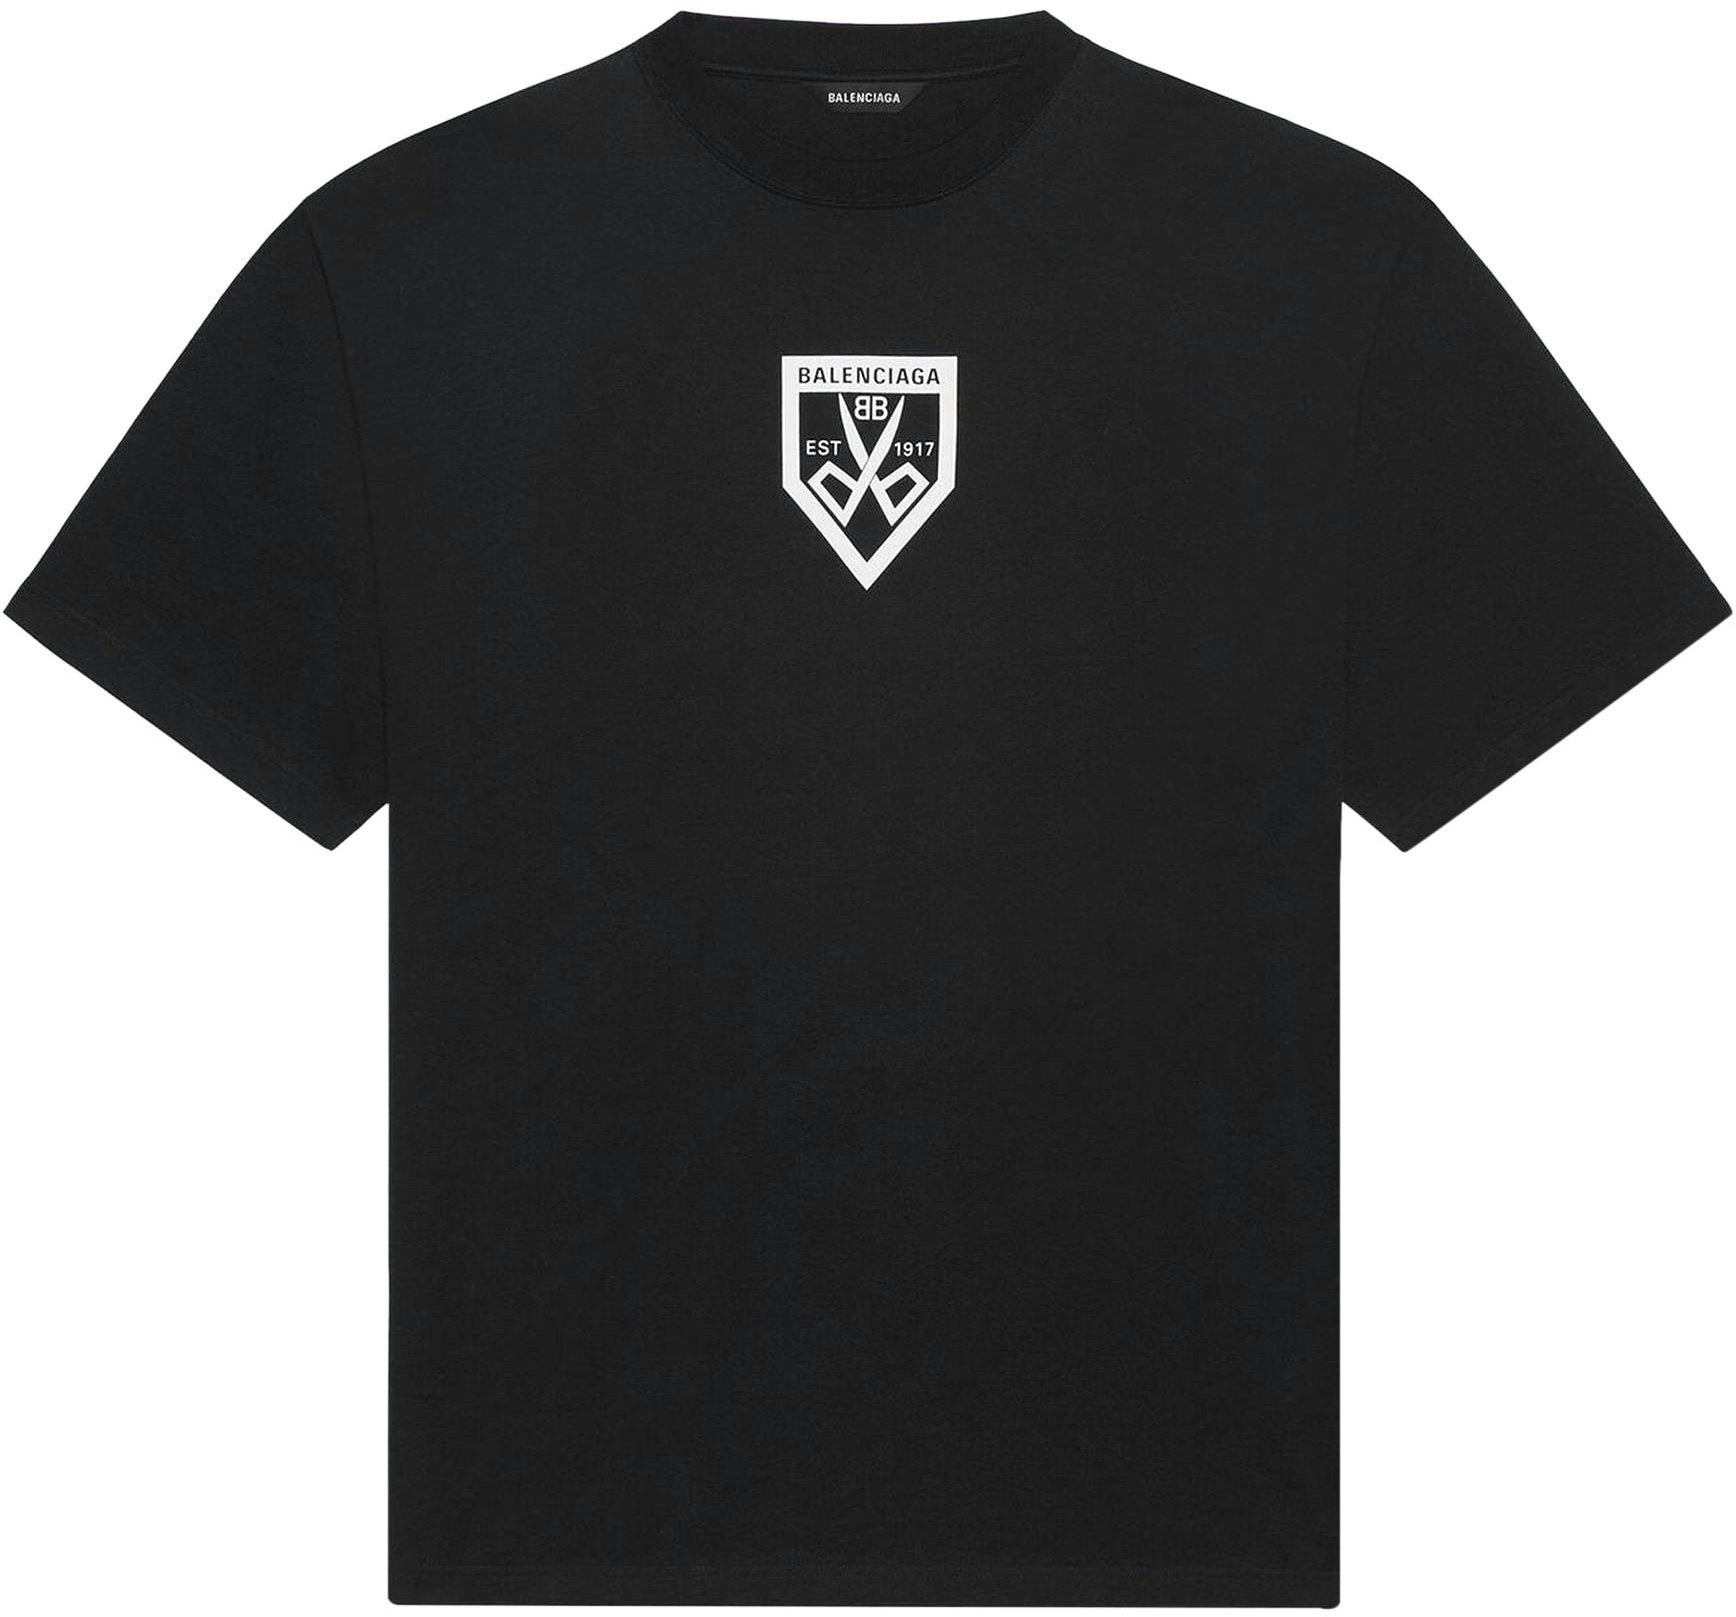 Balenciaga Scissors Flatground T-Shirt 'Black/White' - 651795-TKV77 ...